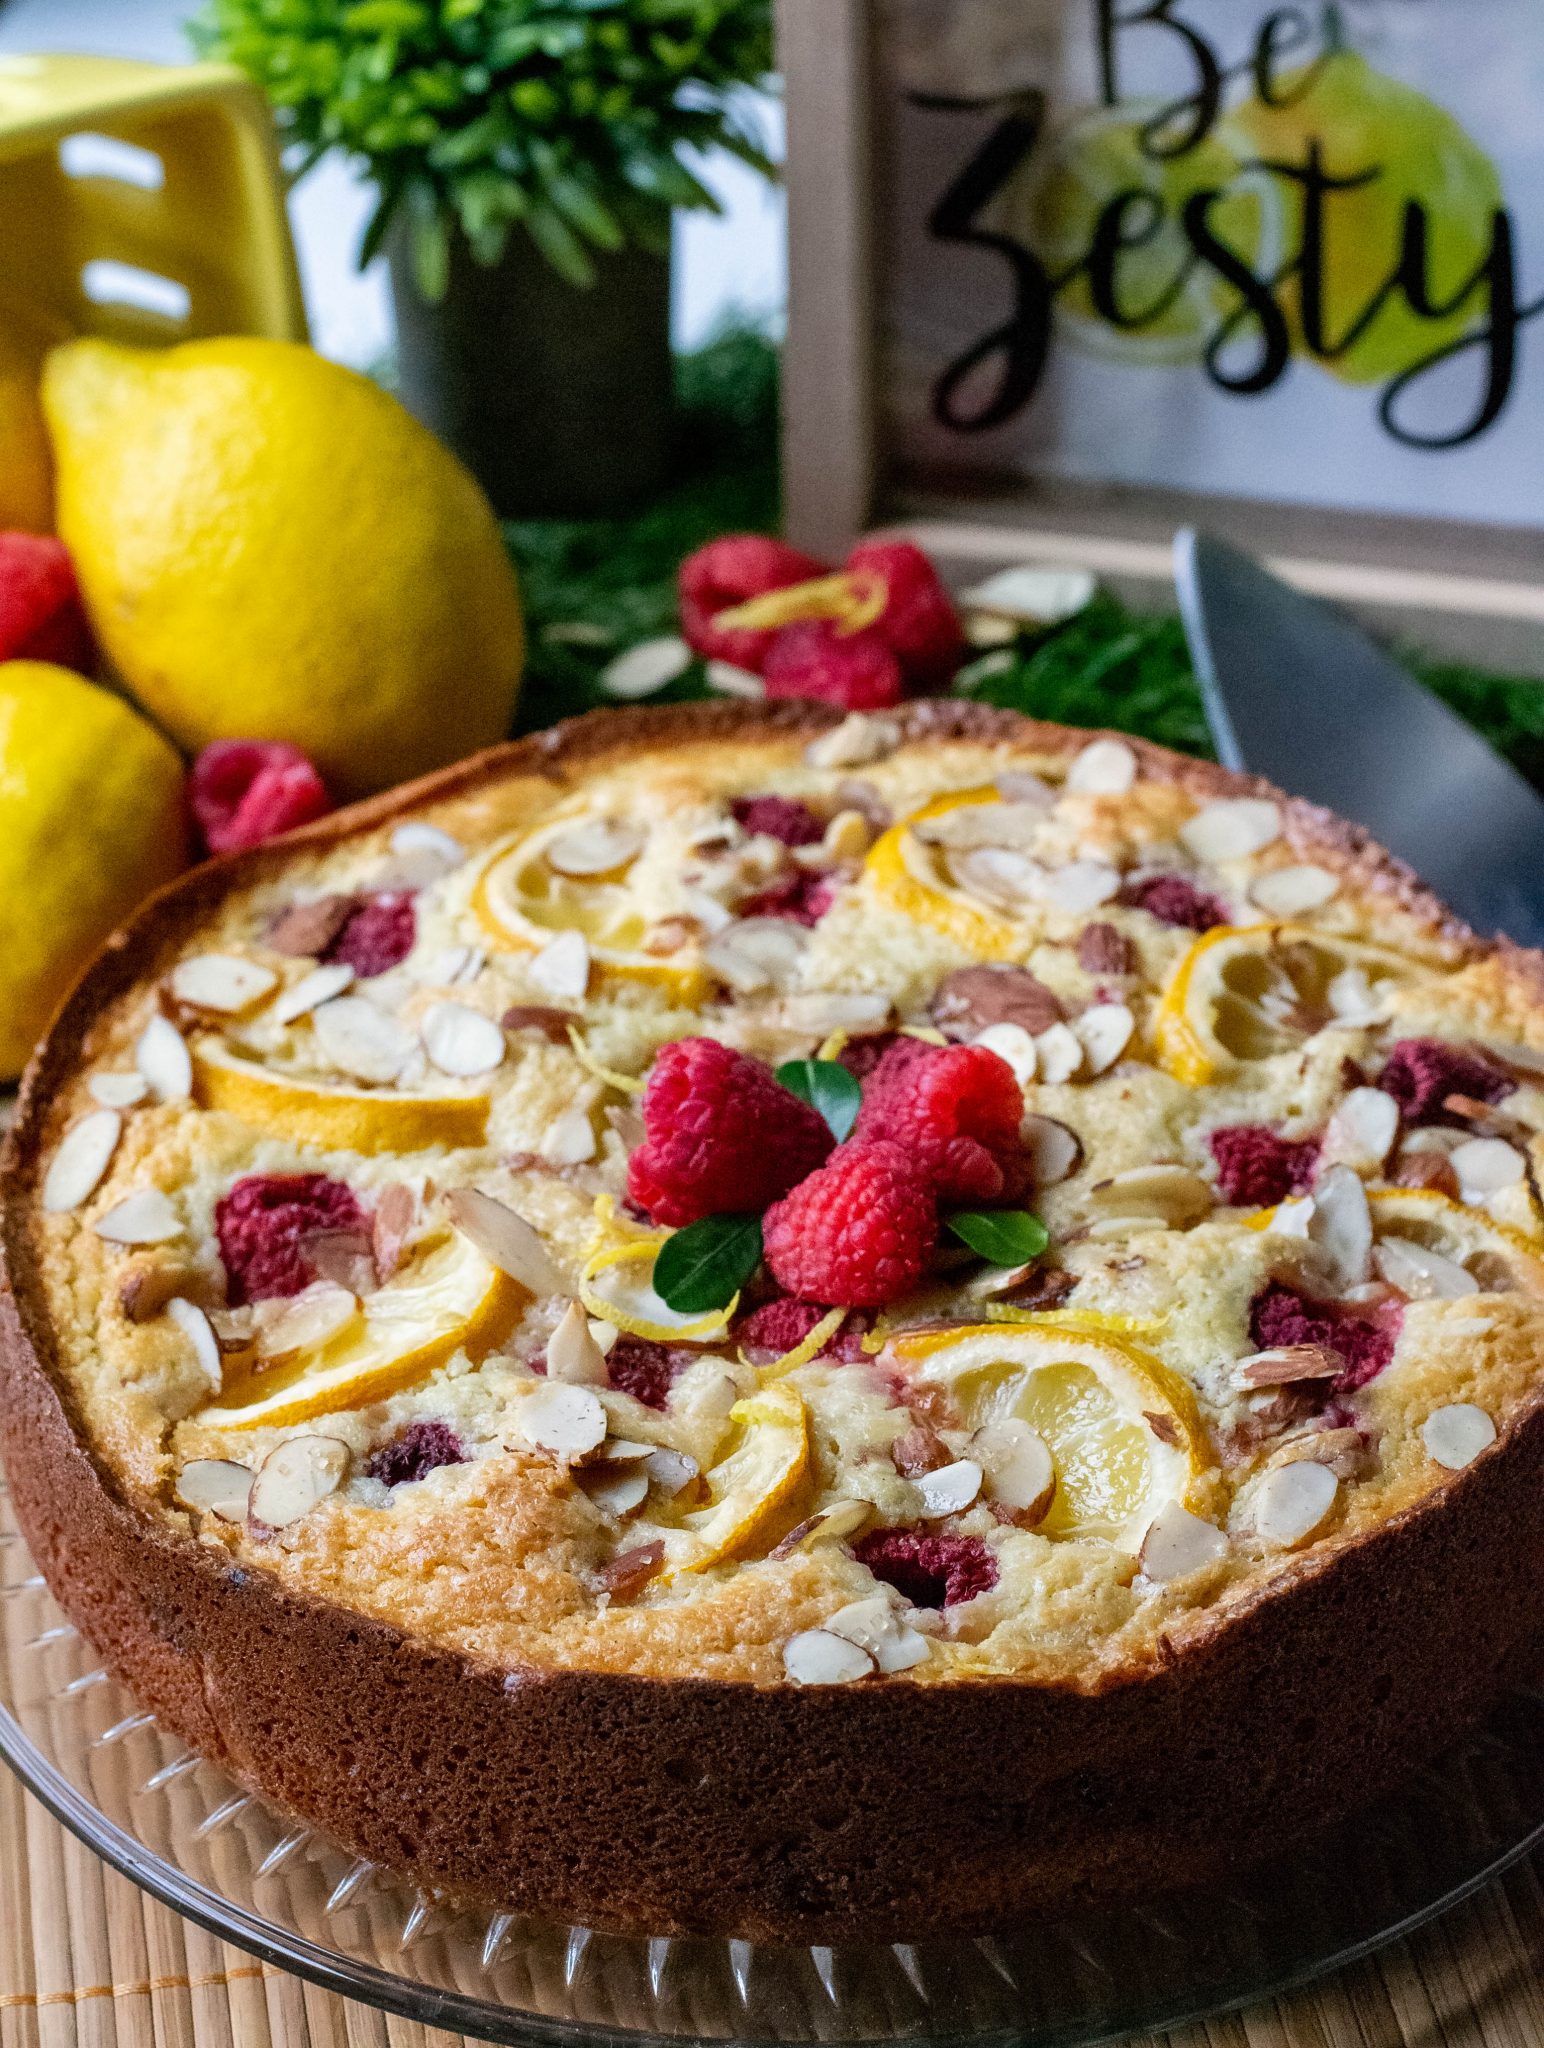 Raspberry Lemon Almond Ricotta Cake - What the Forks for Dinner?